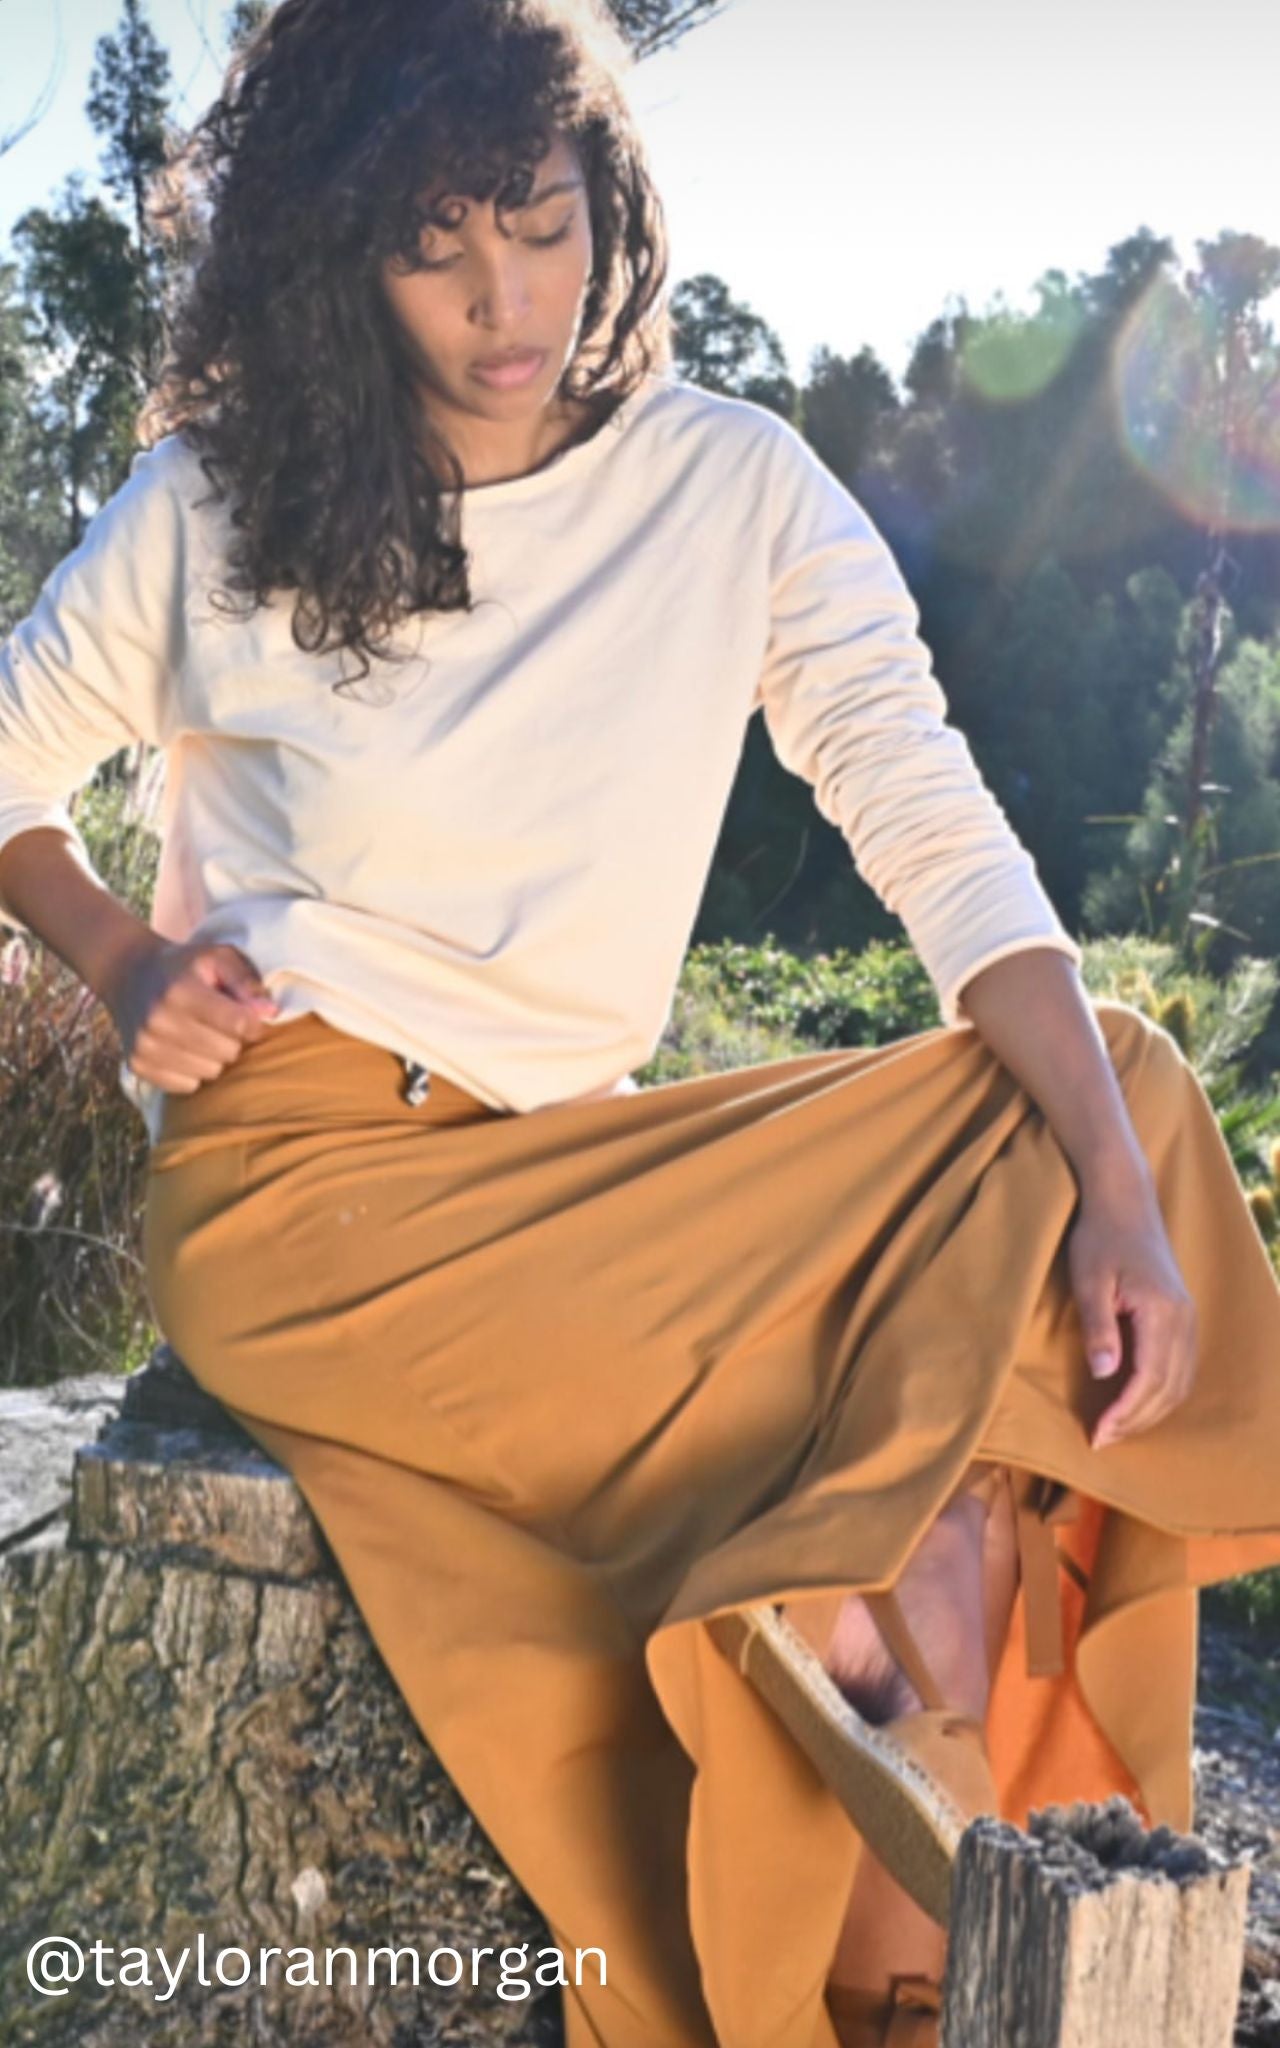 Surya Australia Ethical Organic Cotton Skirt made in Nepal - Tumeric